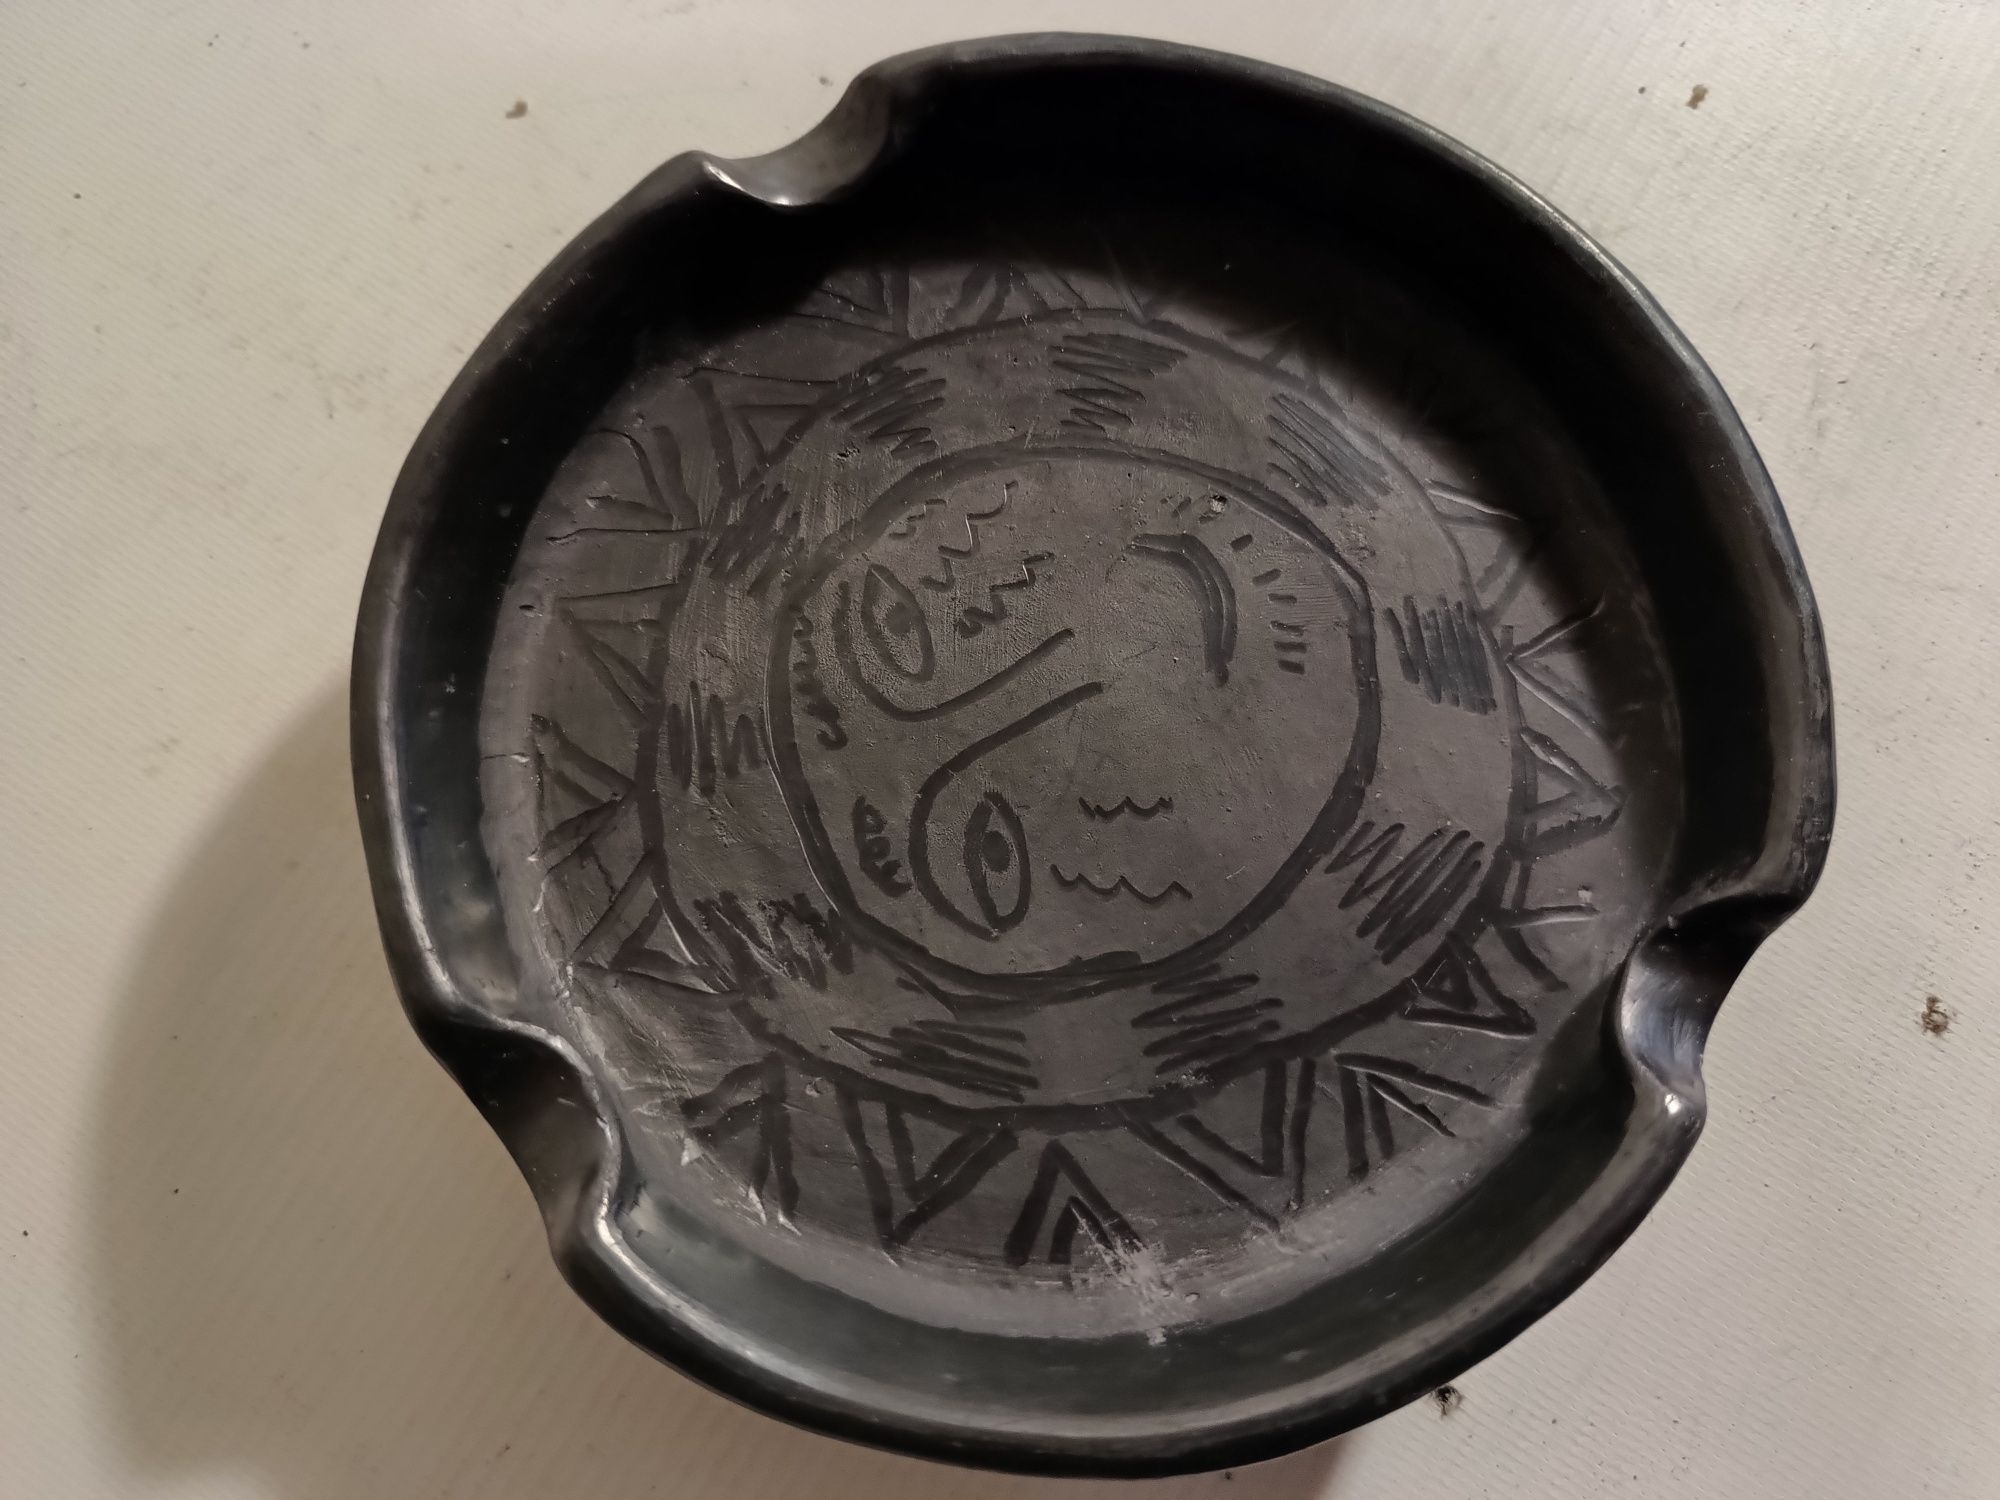 Meksyk, popielniczka ceramiczna ręcznie robiona, sygnowana